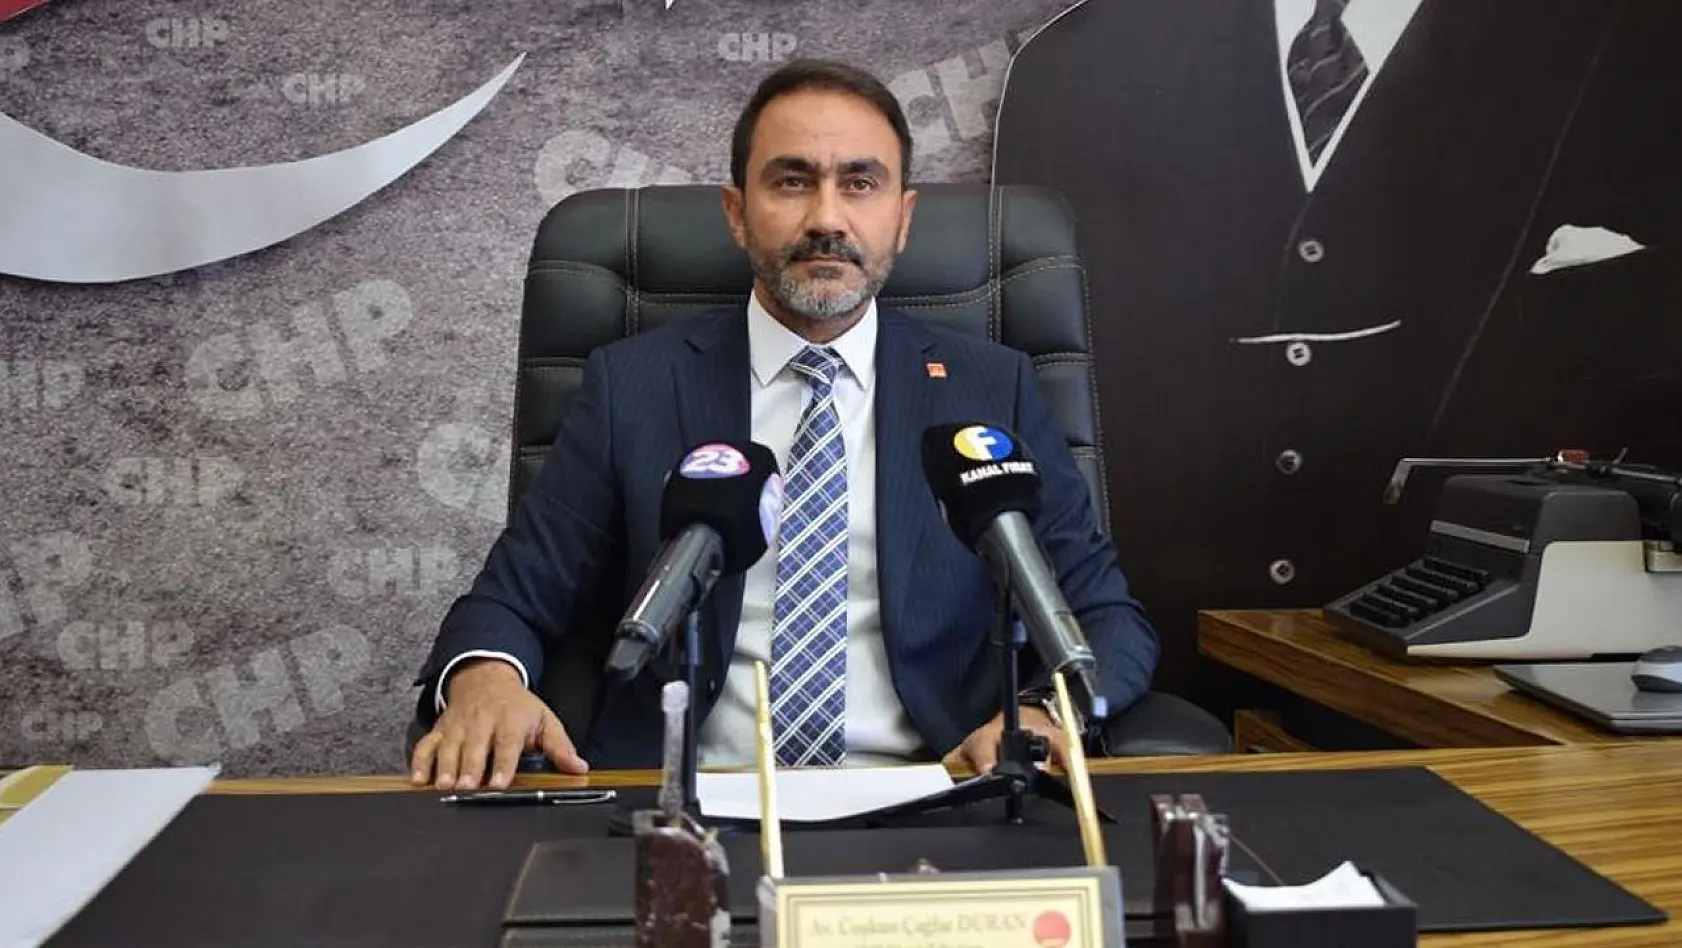 CHP İl Başkanı Duran Mahalle Ziyaretlerini Değerlendirdi